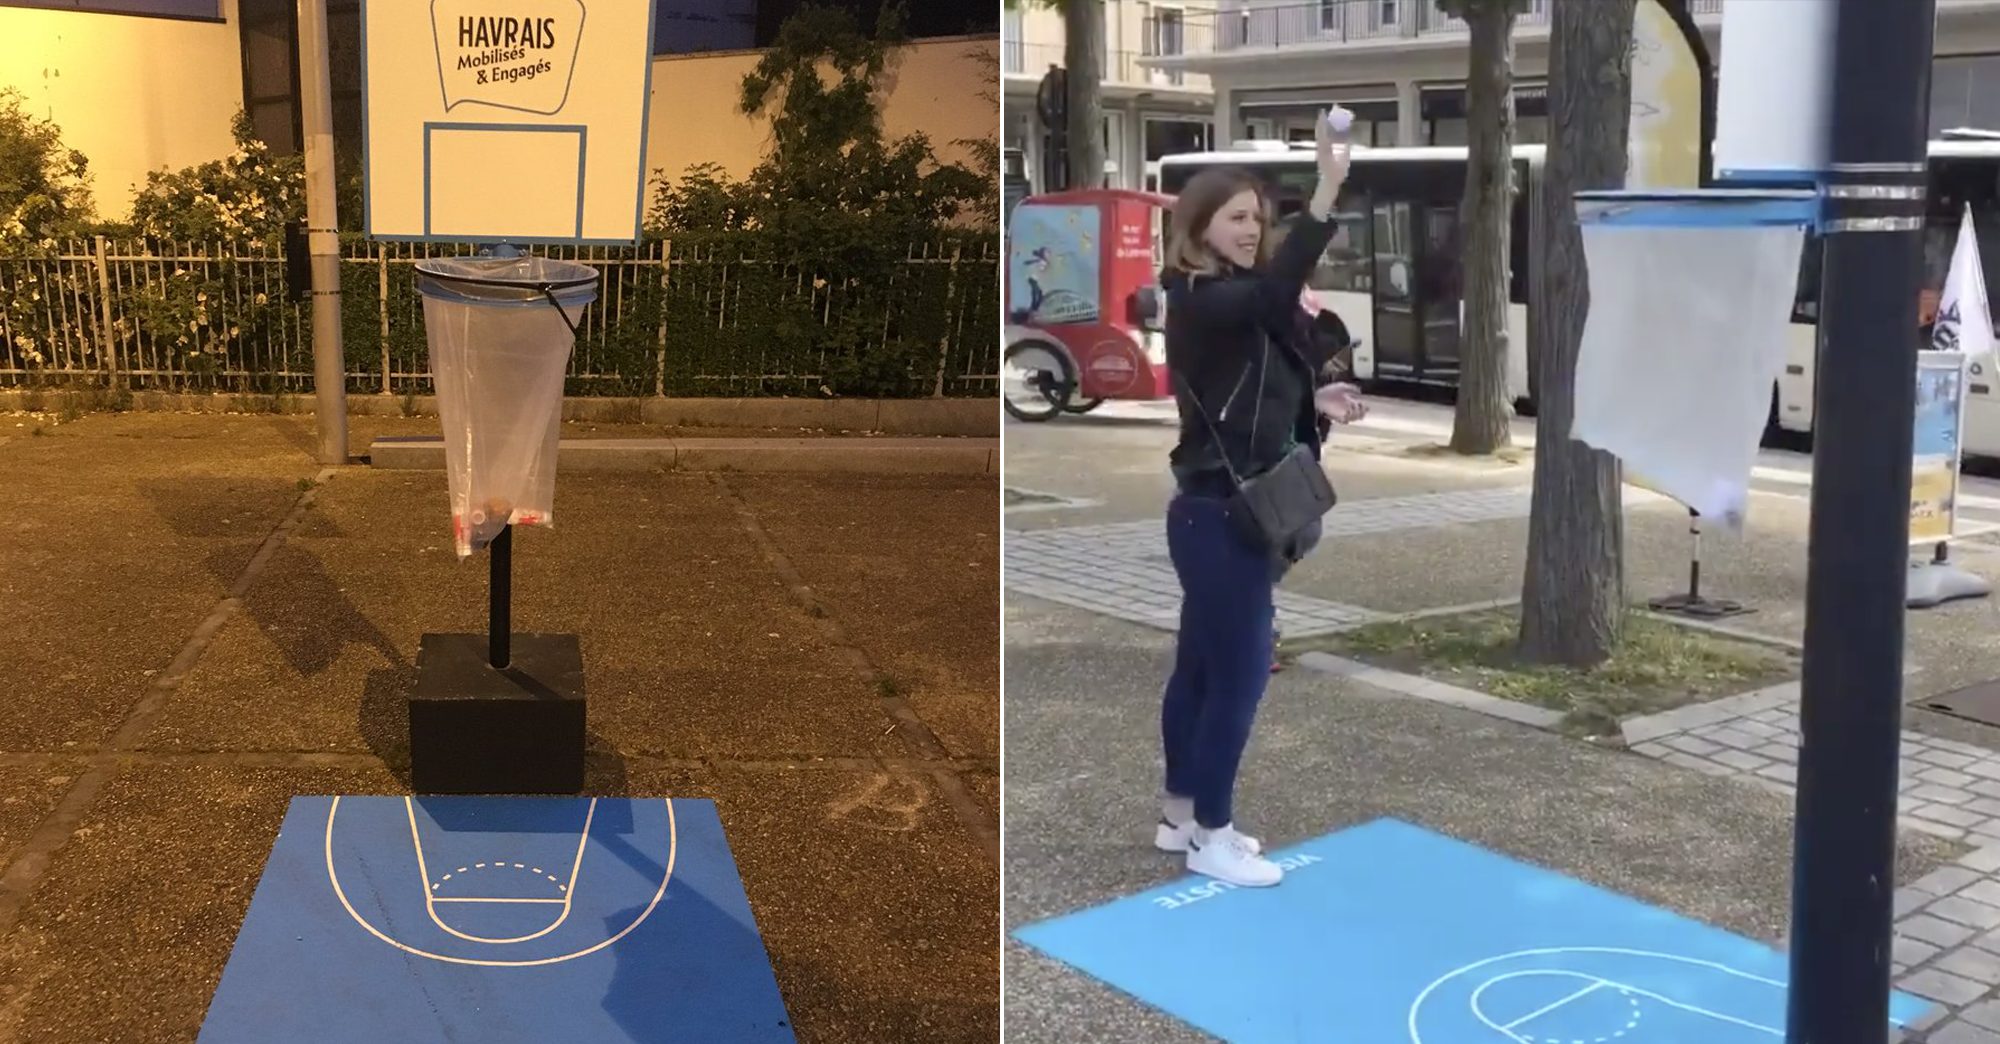 La ville du Havre transforme les poubelles en paniers de basket